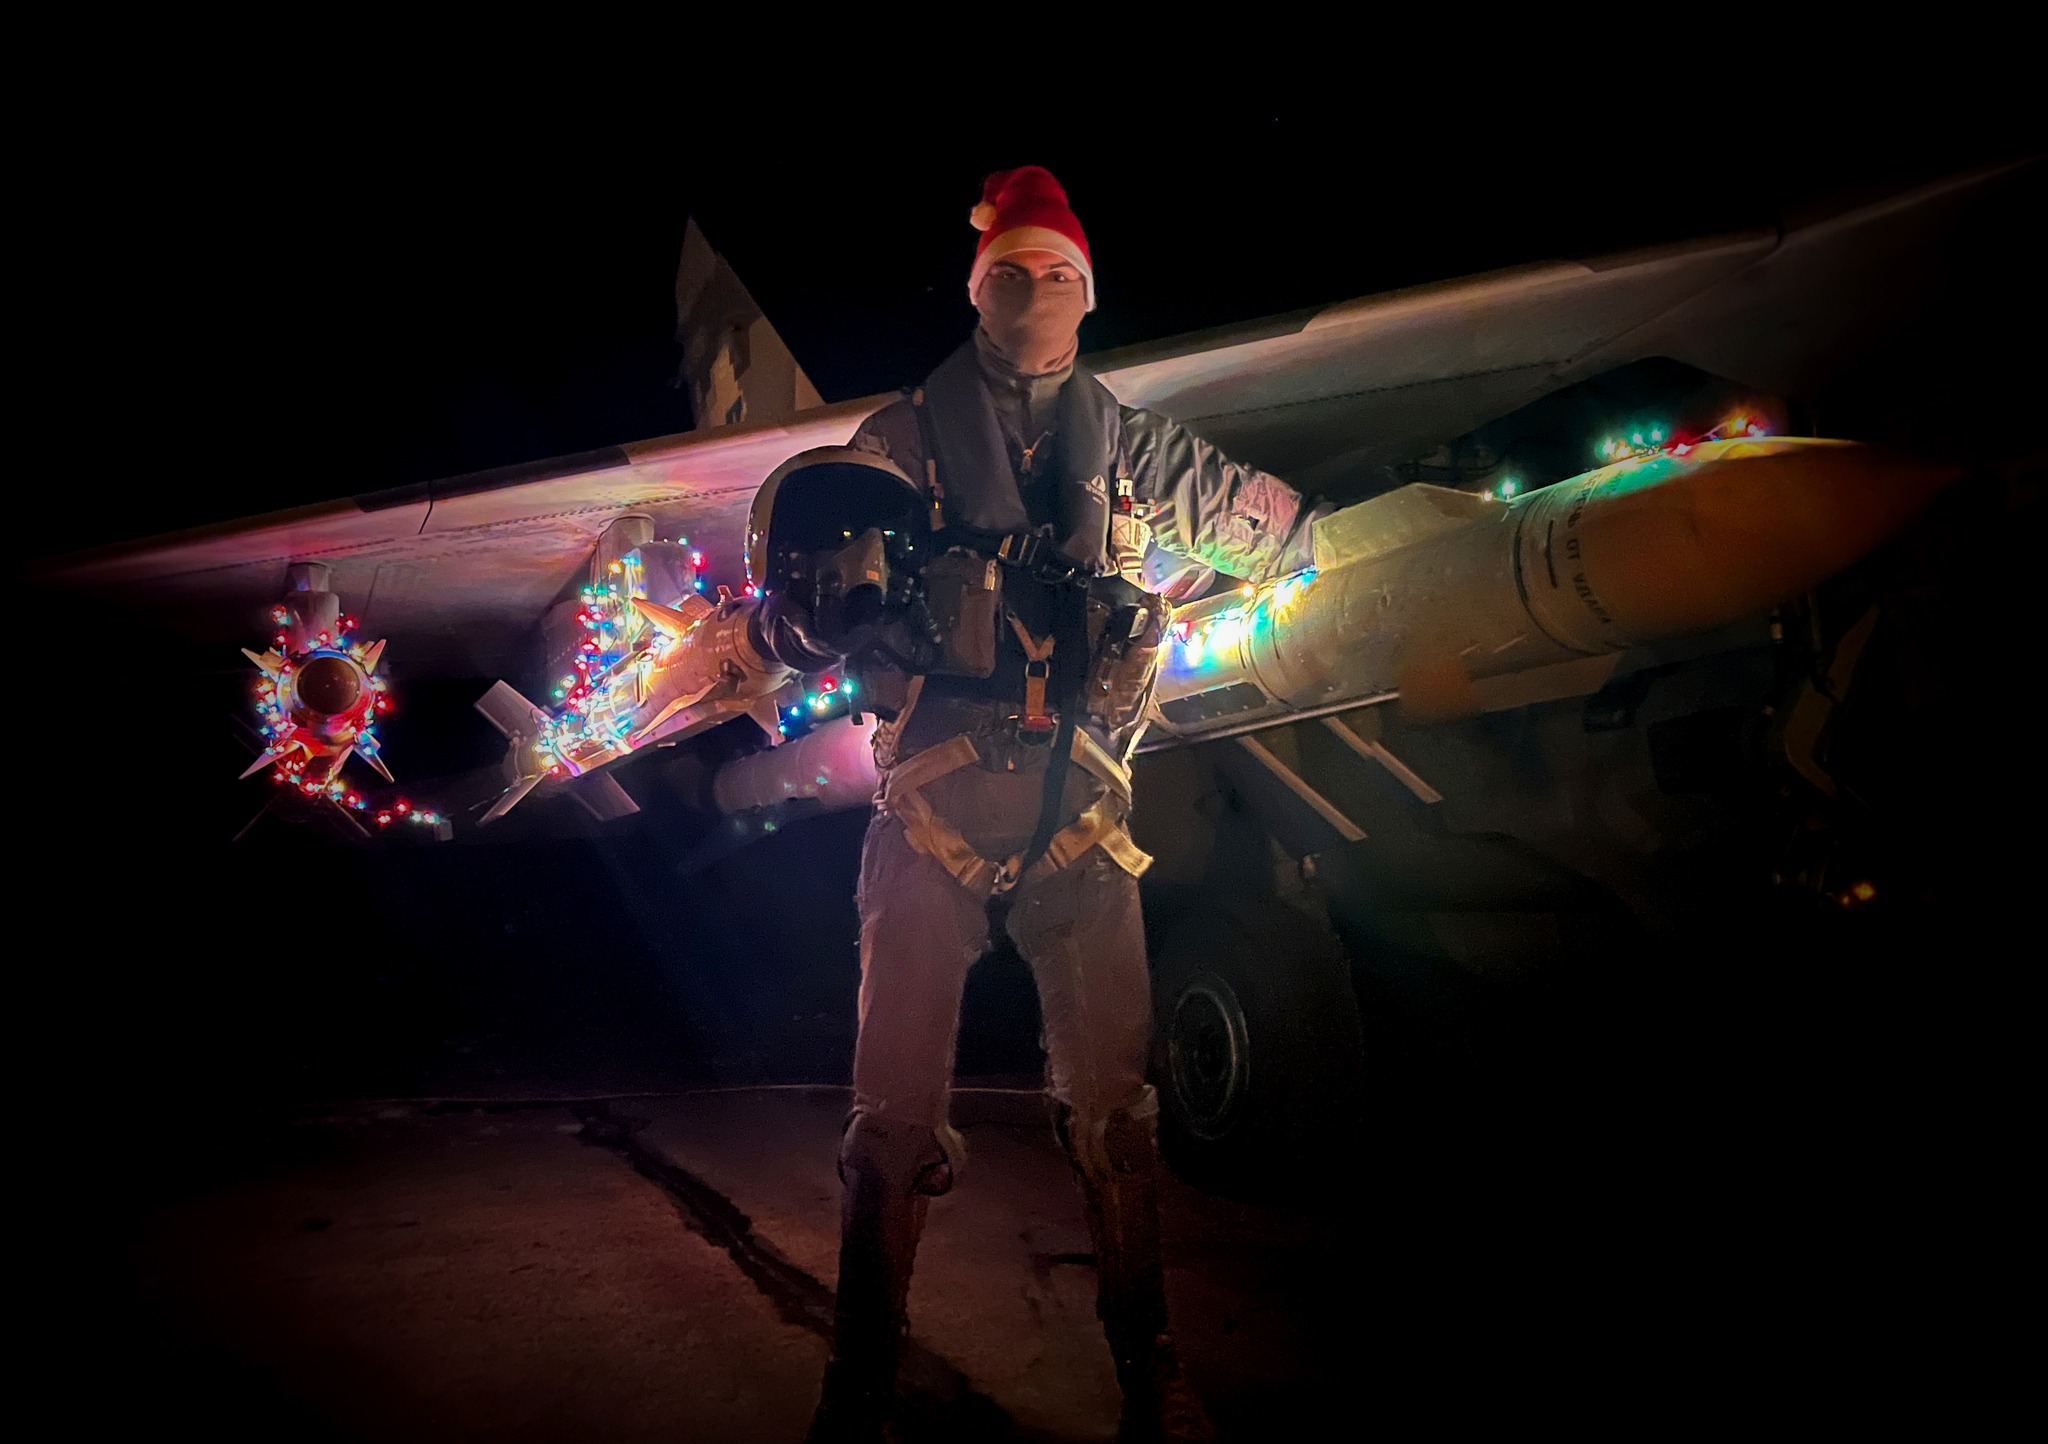 Воздушные силы поздравляют: на самолетах готовы "подарки" для армии России – фото